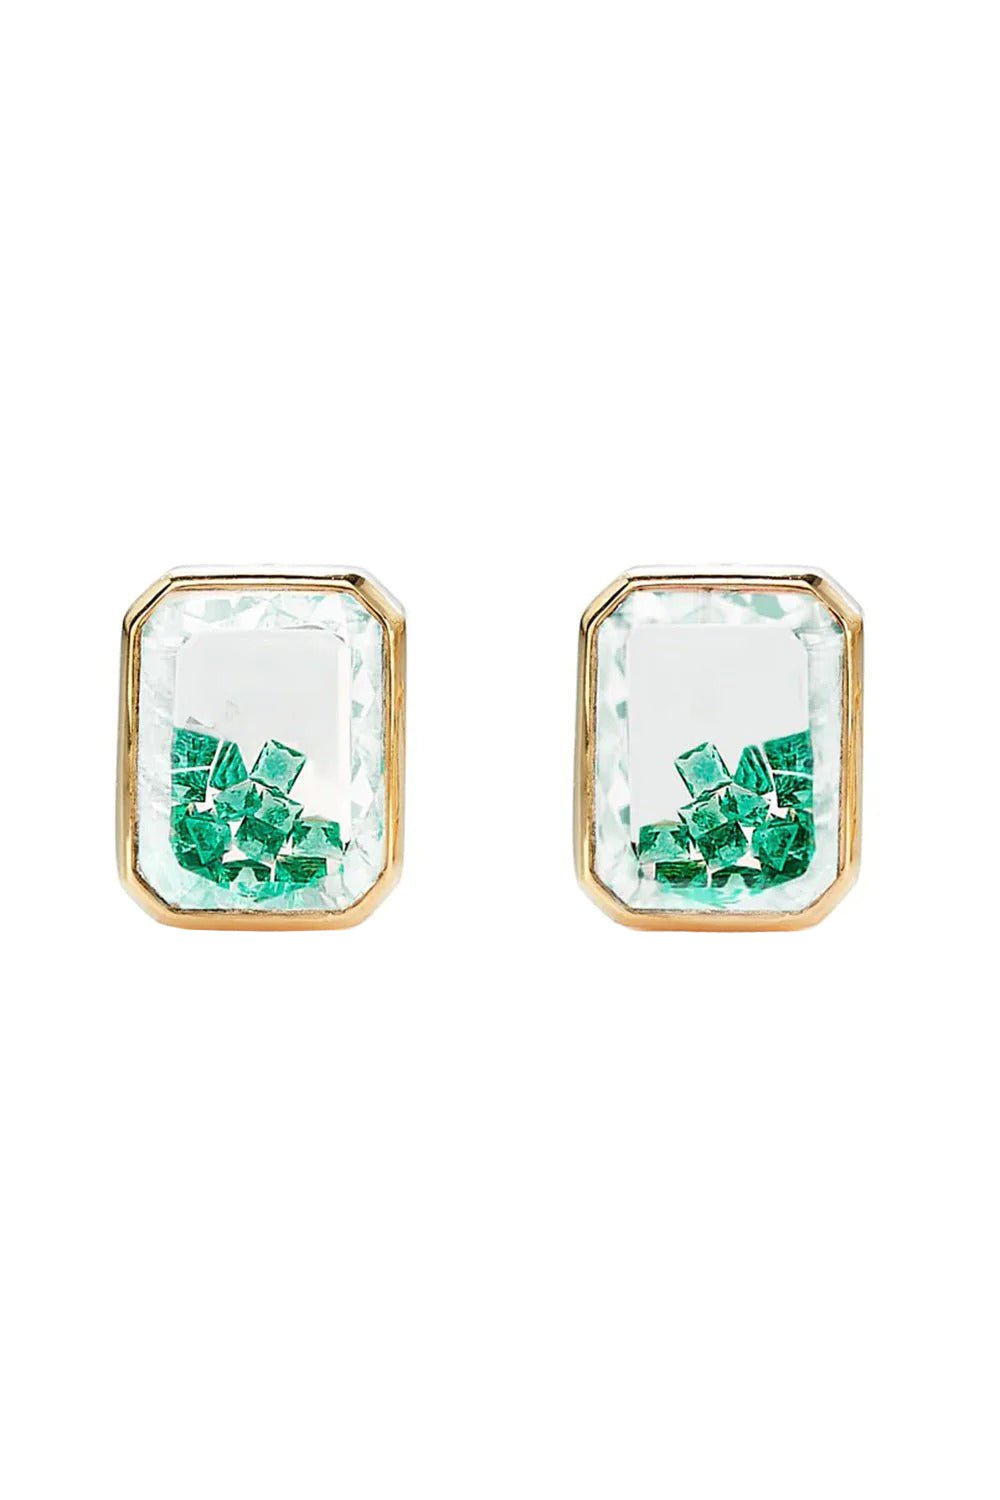 Emerald Shaker Stud Earrings JEWELRYFINE JEWELEARRING MORITZ GLIK   